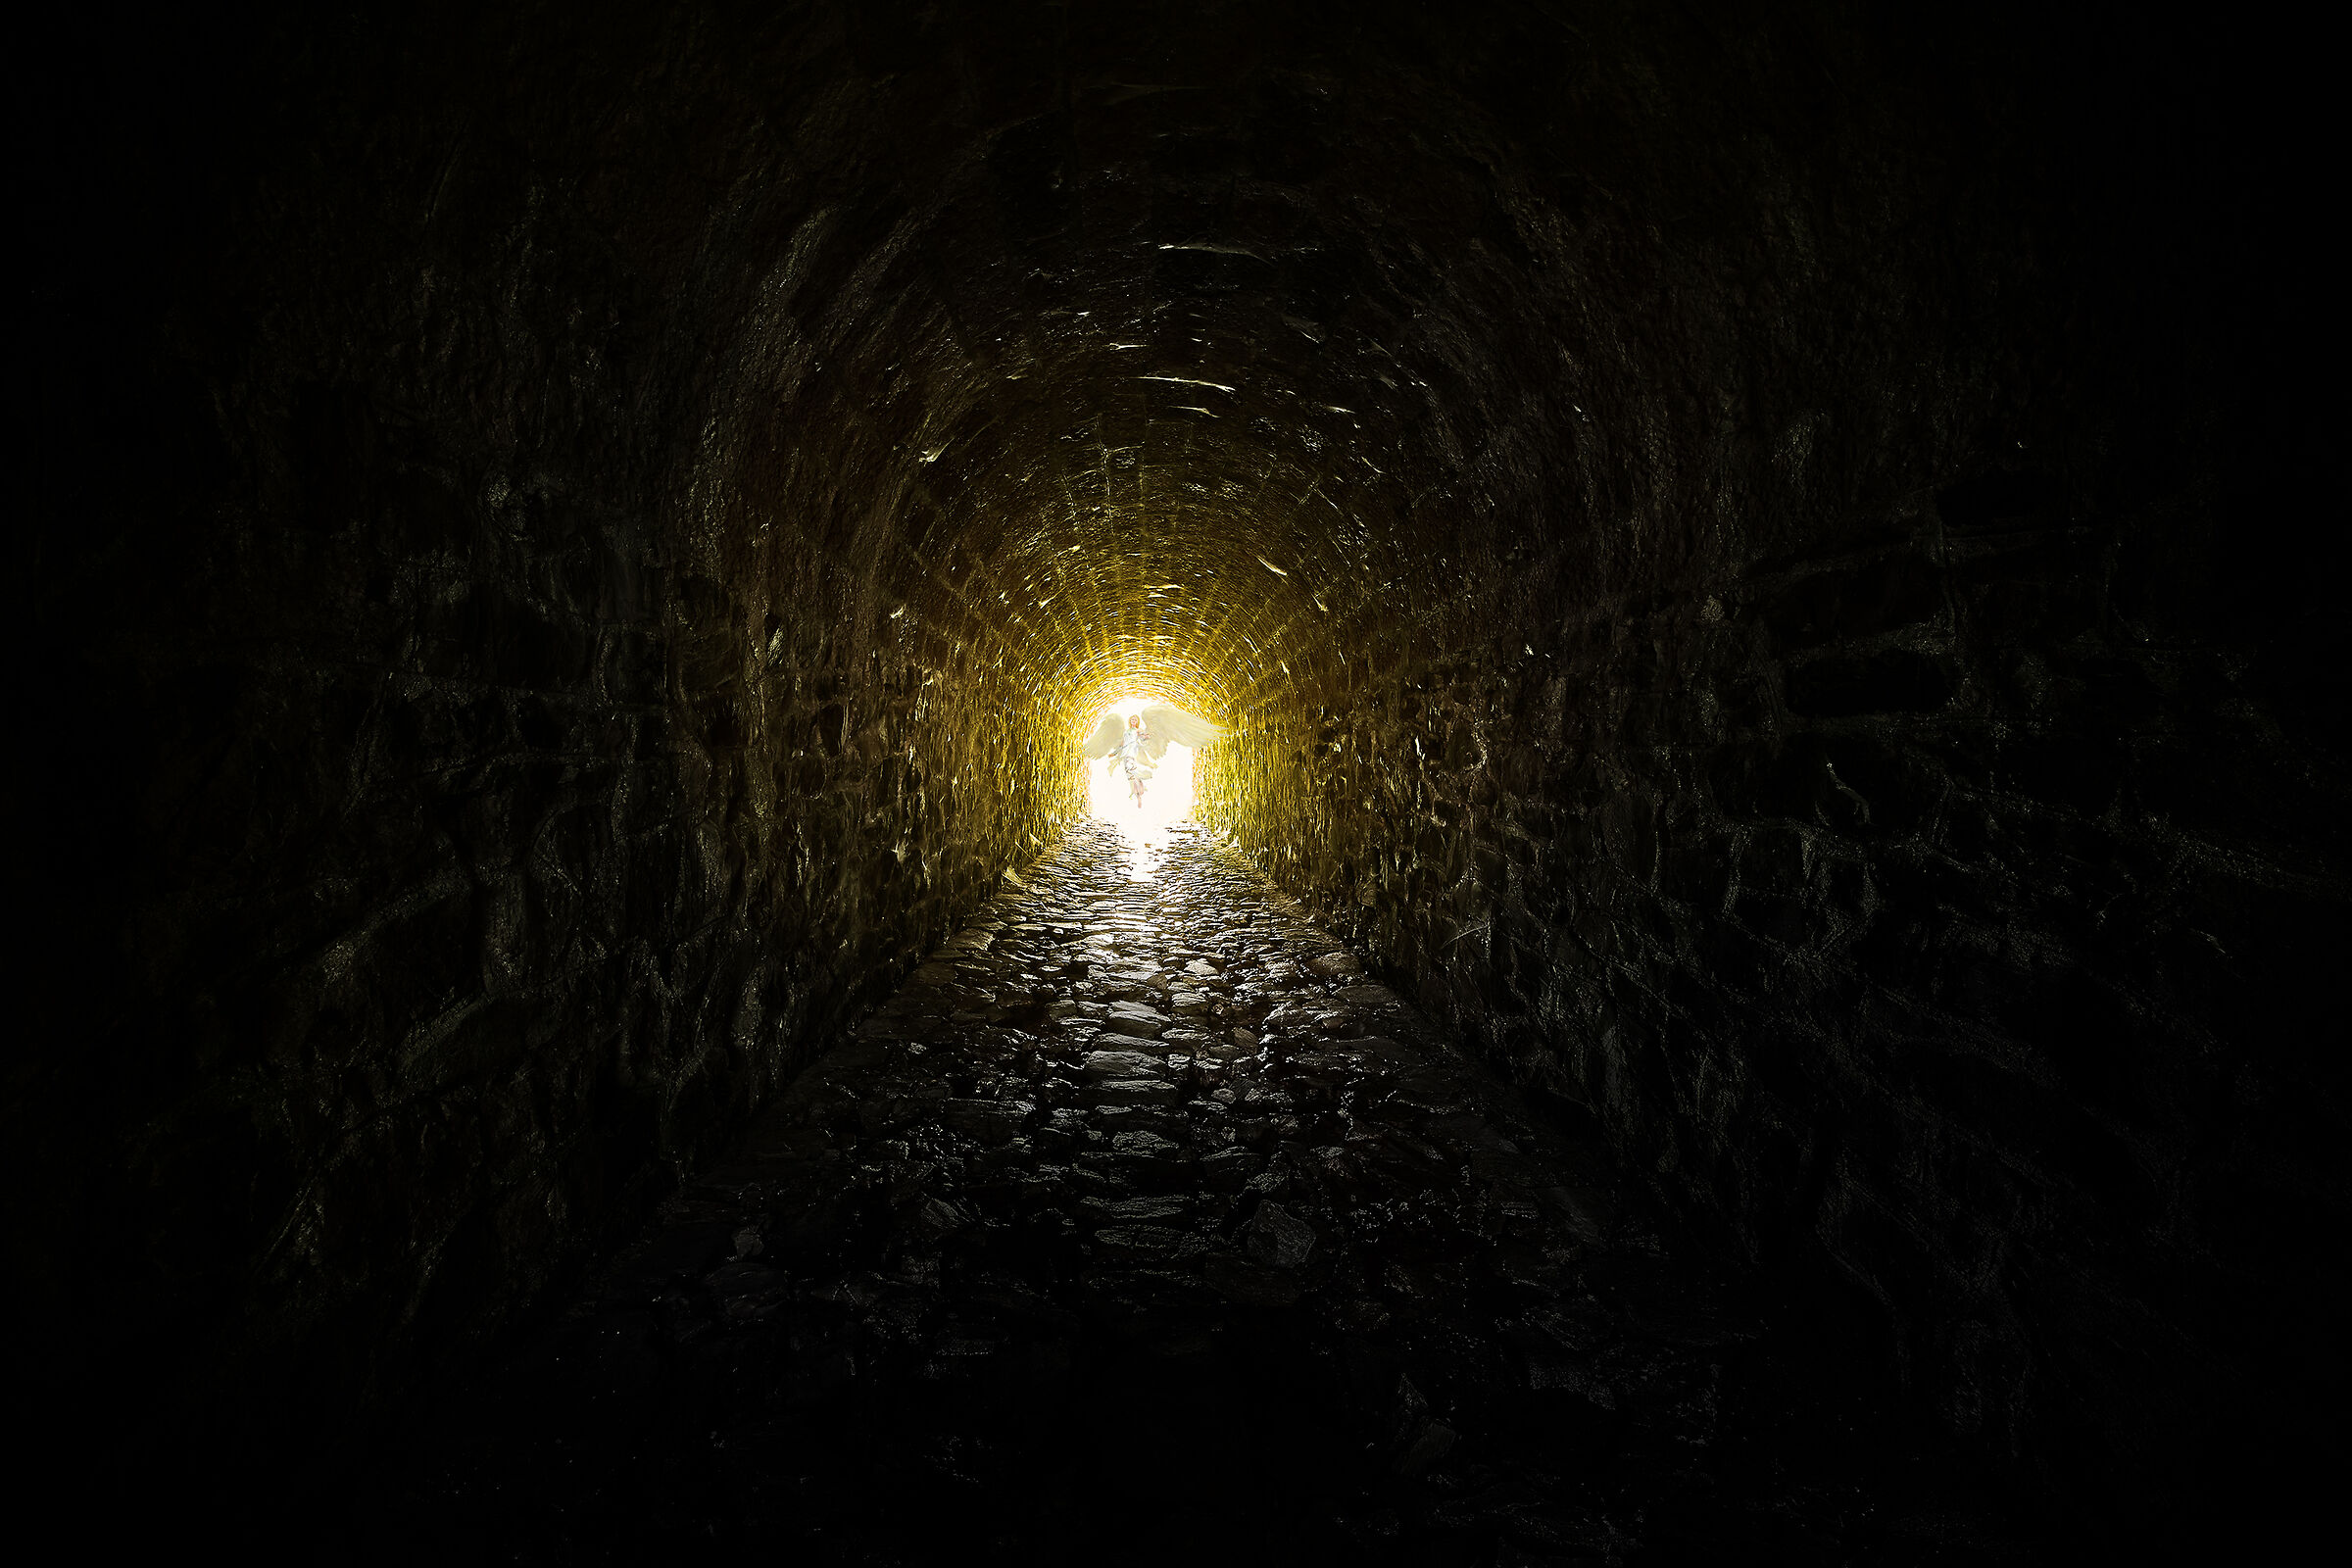 La luce in fondo al tunnel...